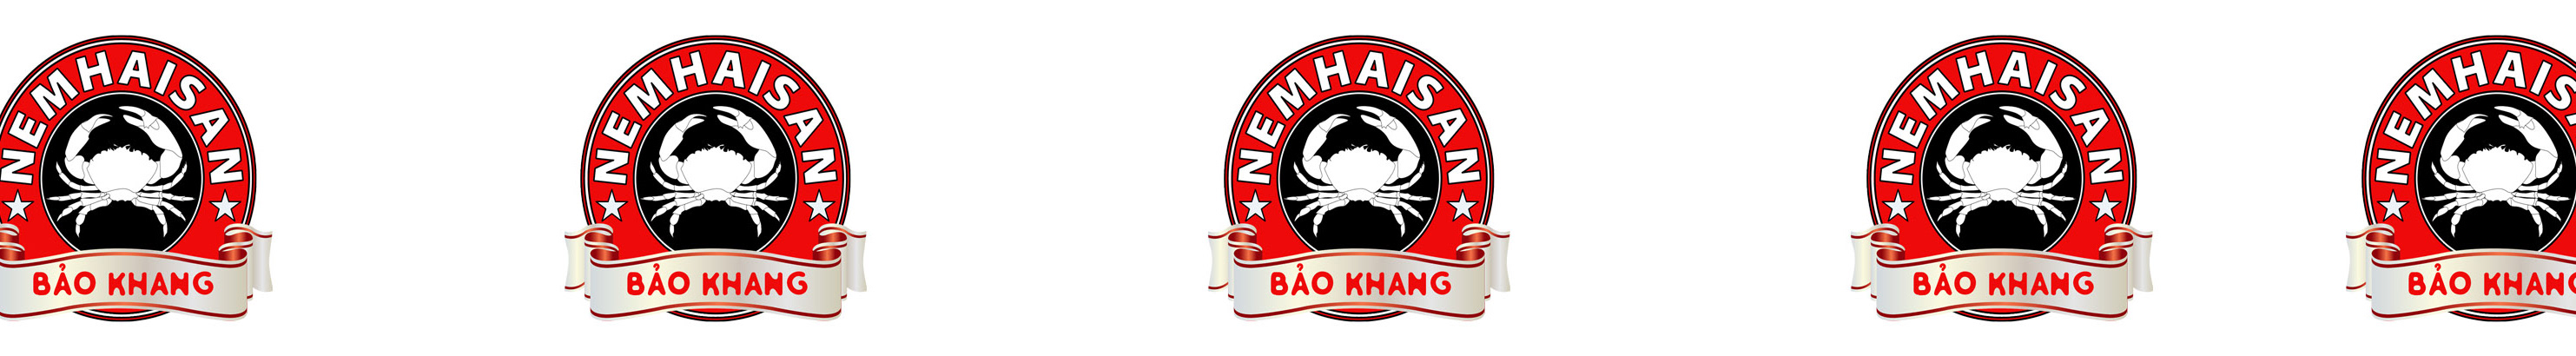 Nem Hải Sản's profile banner